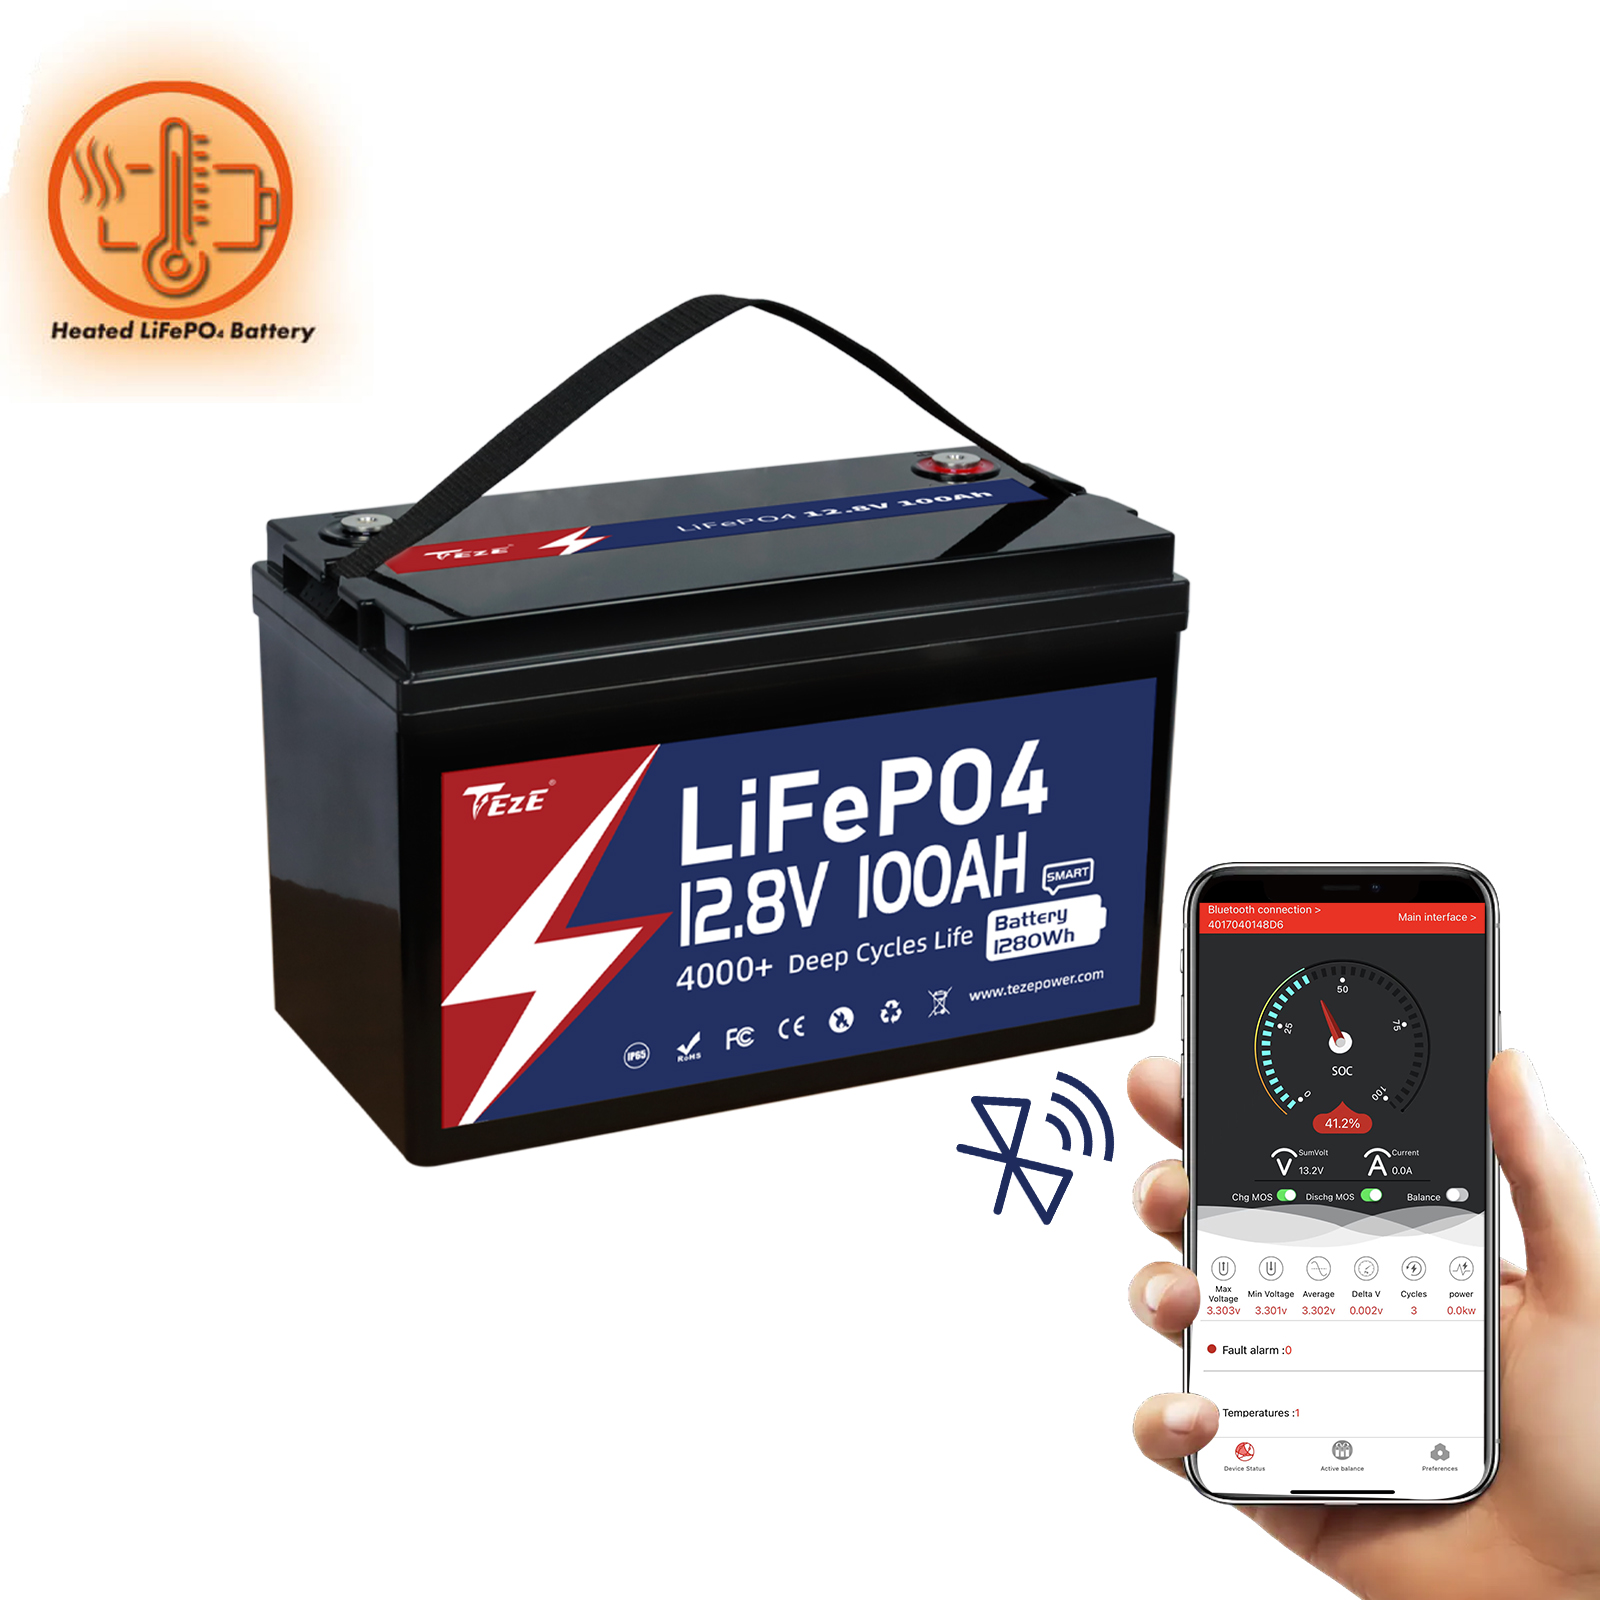 LiTime 12V 100Ah LiFePO4 Batterie, 1280Wh Lithium Akku mit 100A